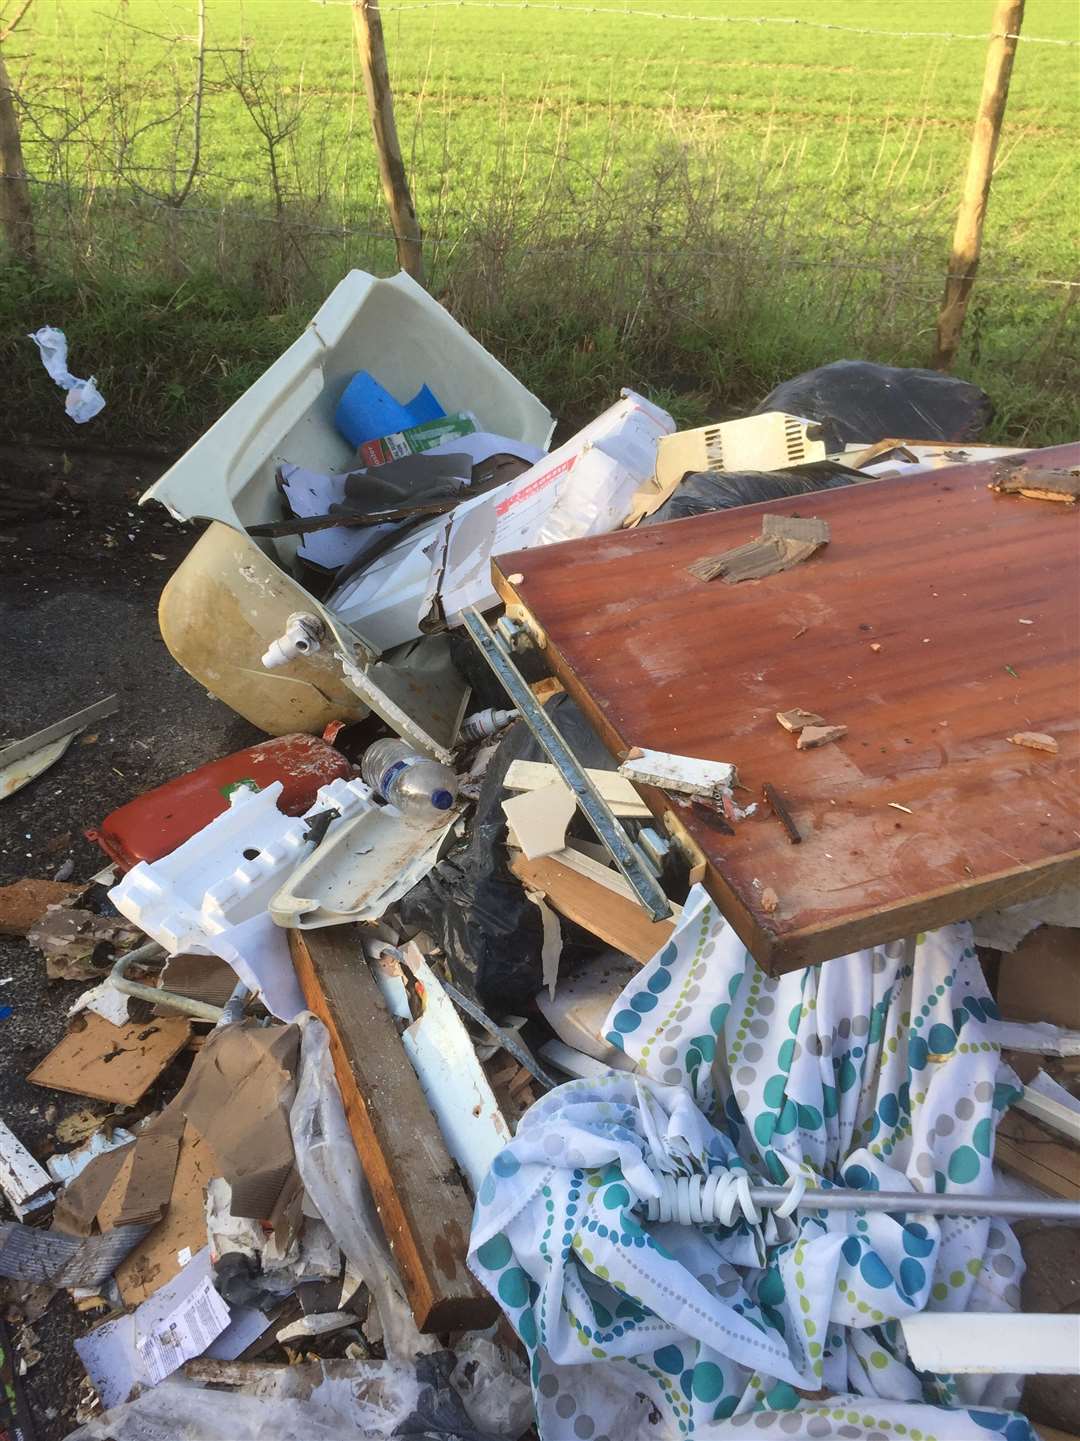 The rubbish found dumped in Castle Farm Road in Shoreham, near Sevenoaks. Picture: Sevenoaks District Council